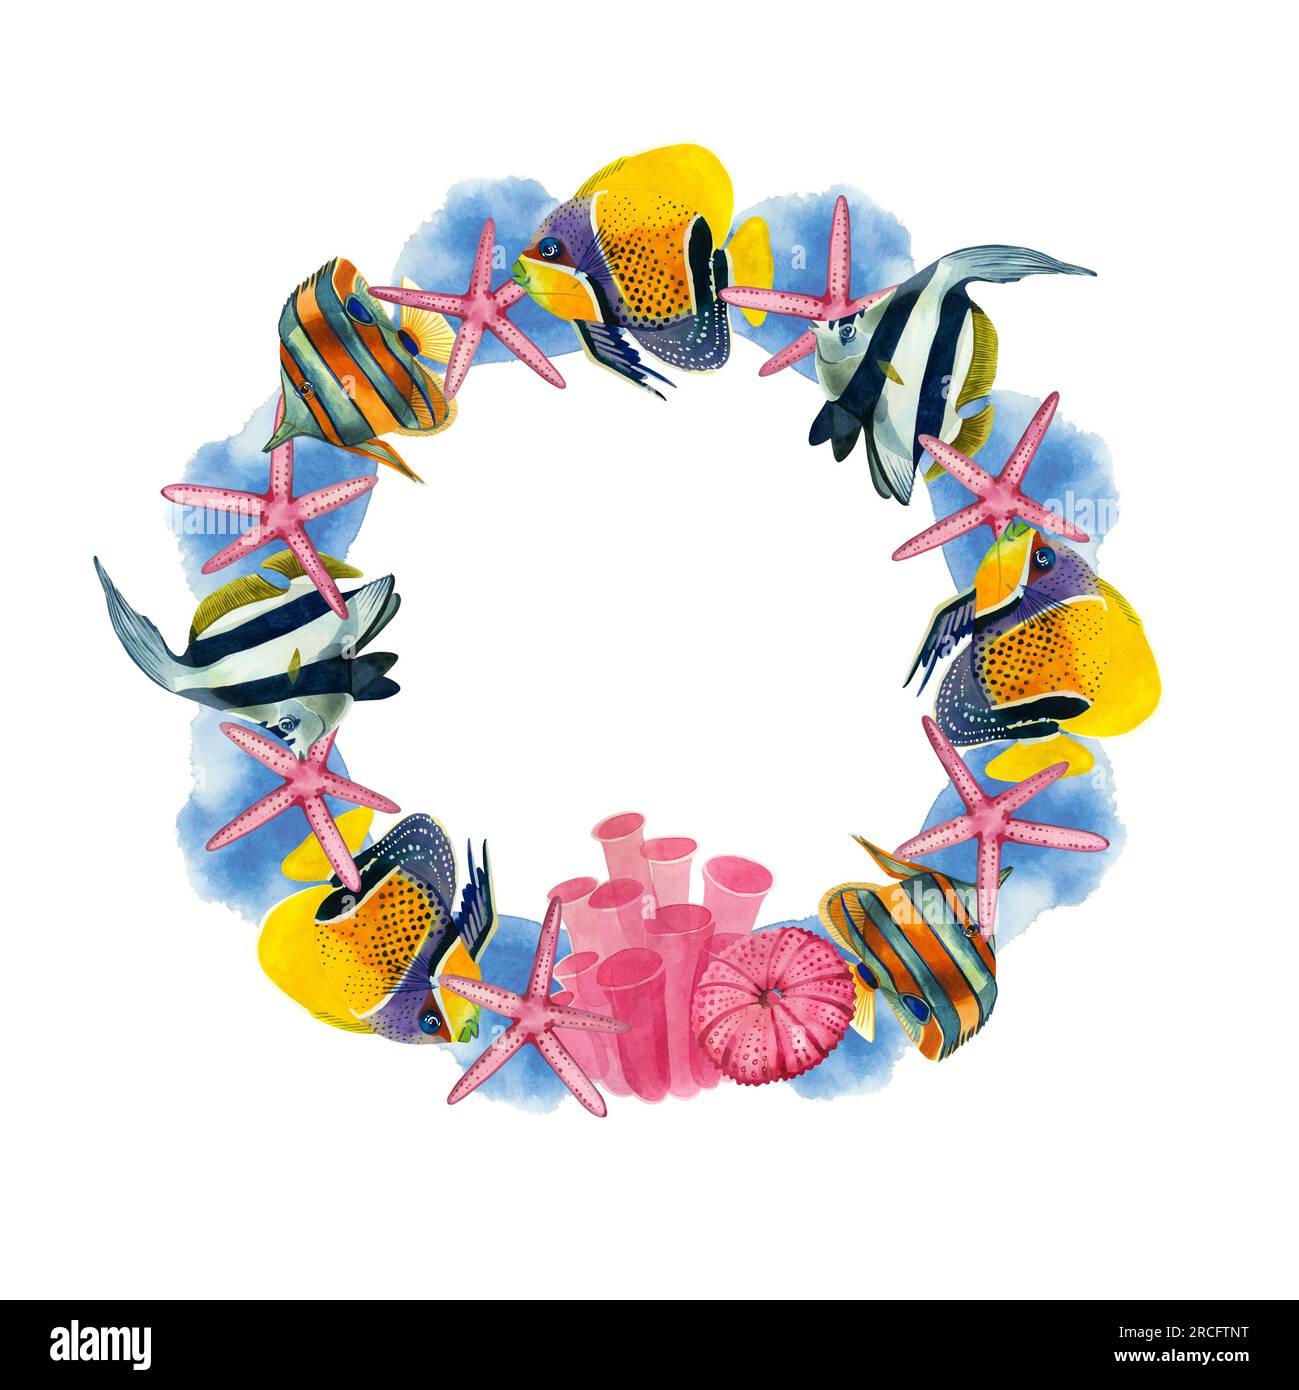 Cadre rond de poissons tropicaux et étoiles, corail et oursin rose sur fond blanc. Tous les éléments sont dessinés à la main à l'aquarelle Banque D'Images